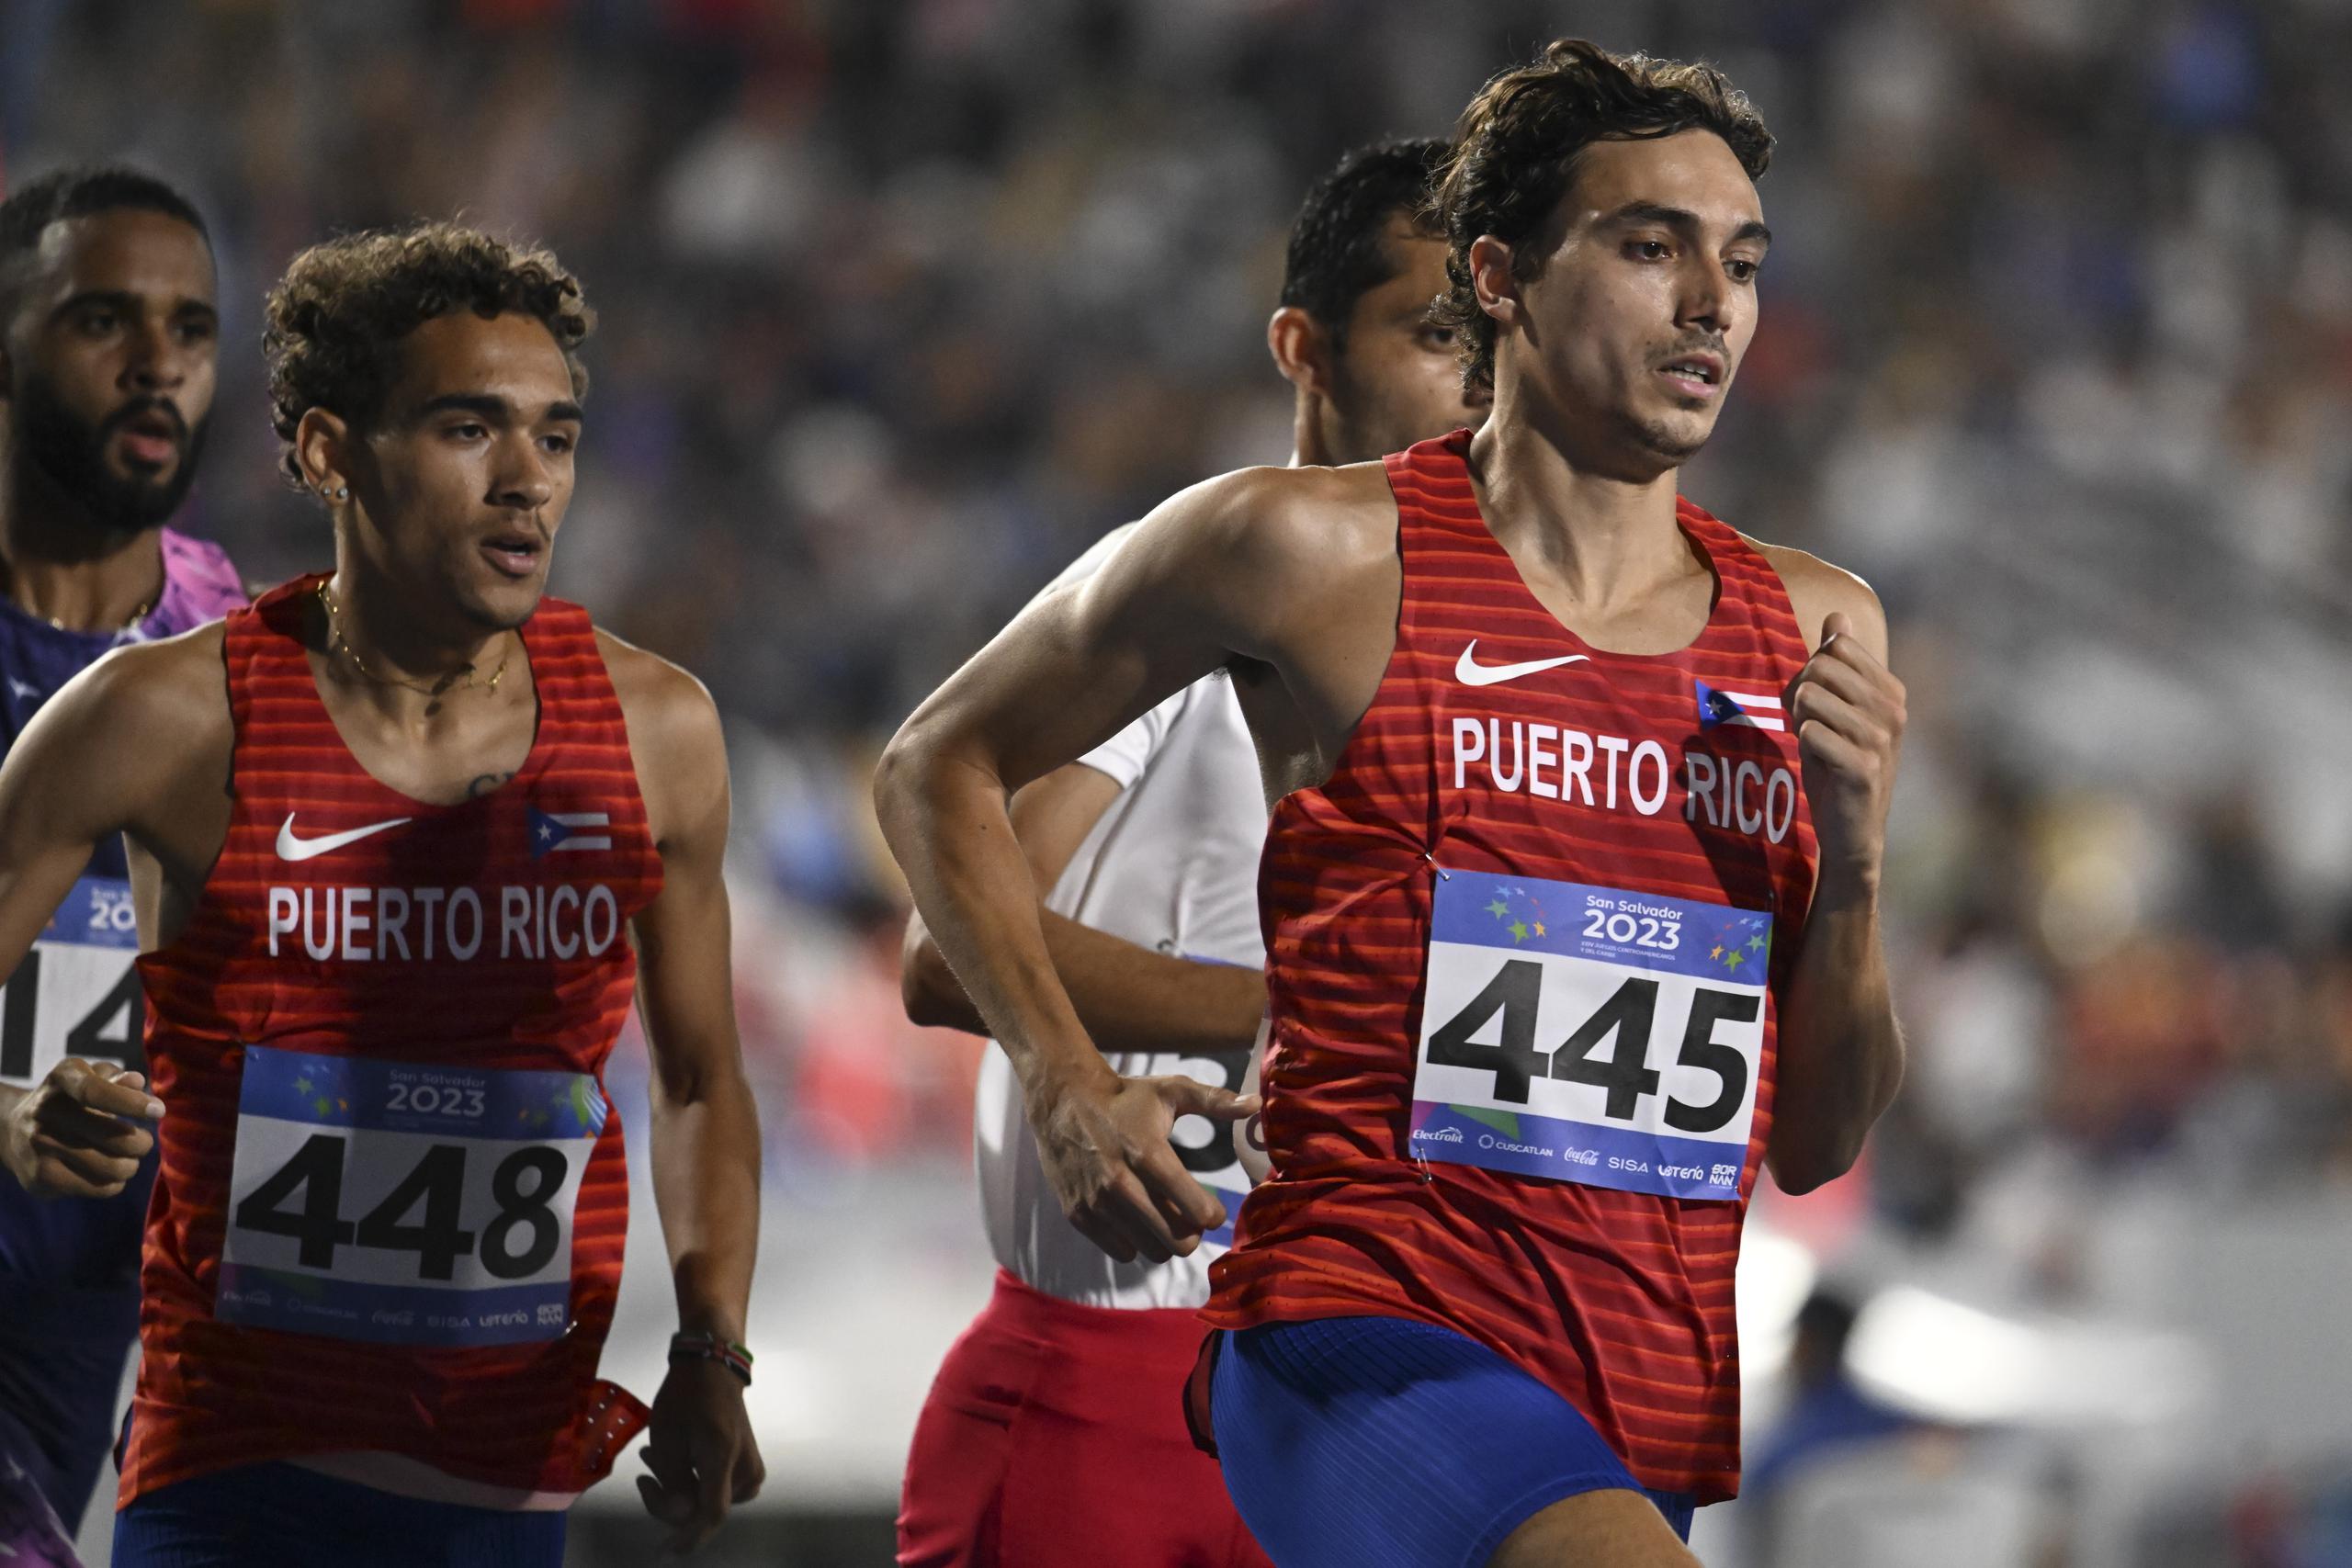 Rob Napolitano, aquí en los Juegos Centroamericanos y del Caribe San Salvador 2023, ocupa el puesto 55 entre los 56 que clasifican a Budapest 2023 en la prueba de 1,500 metros.